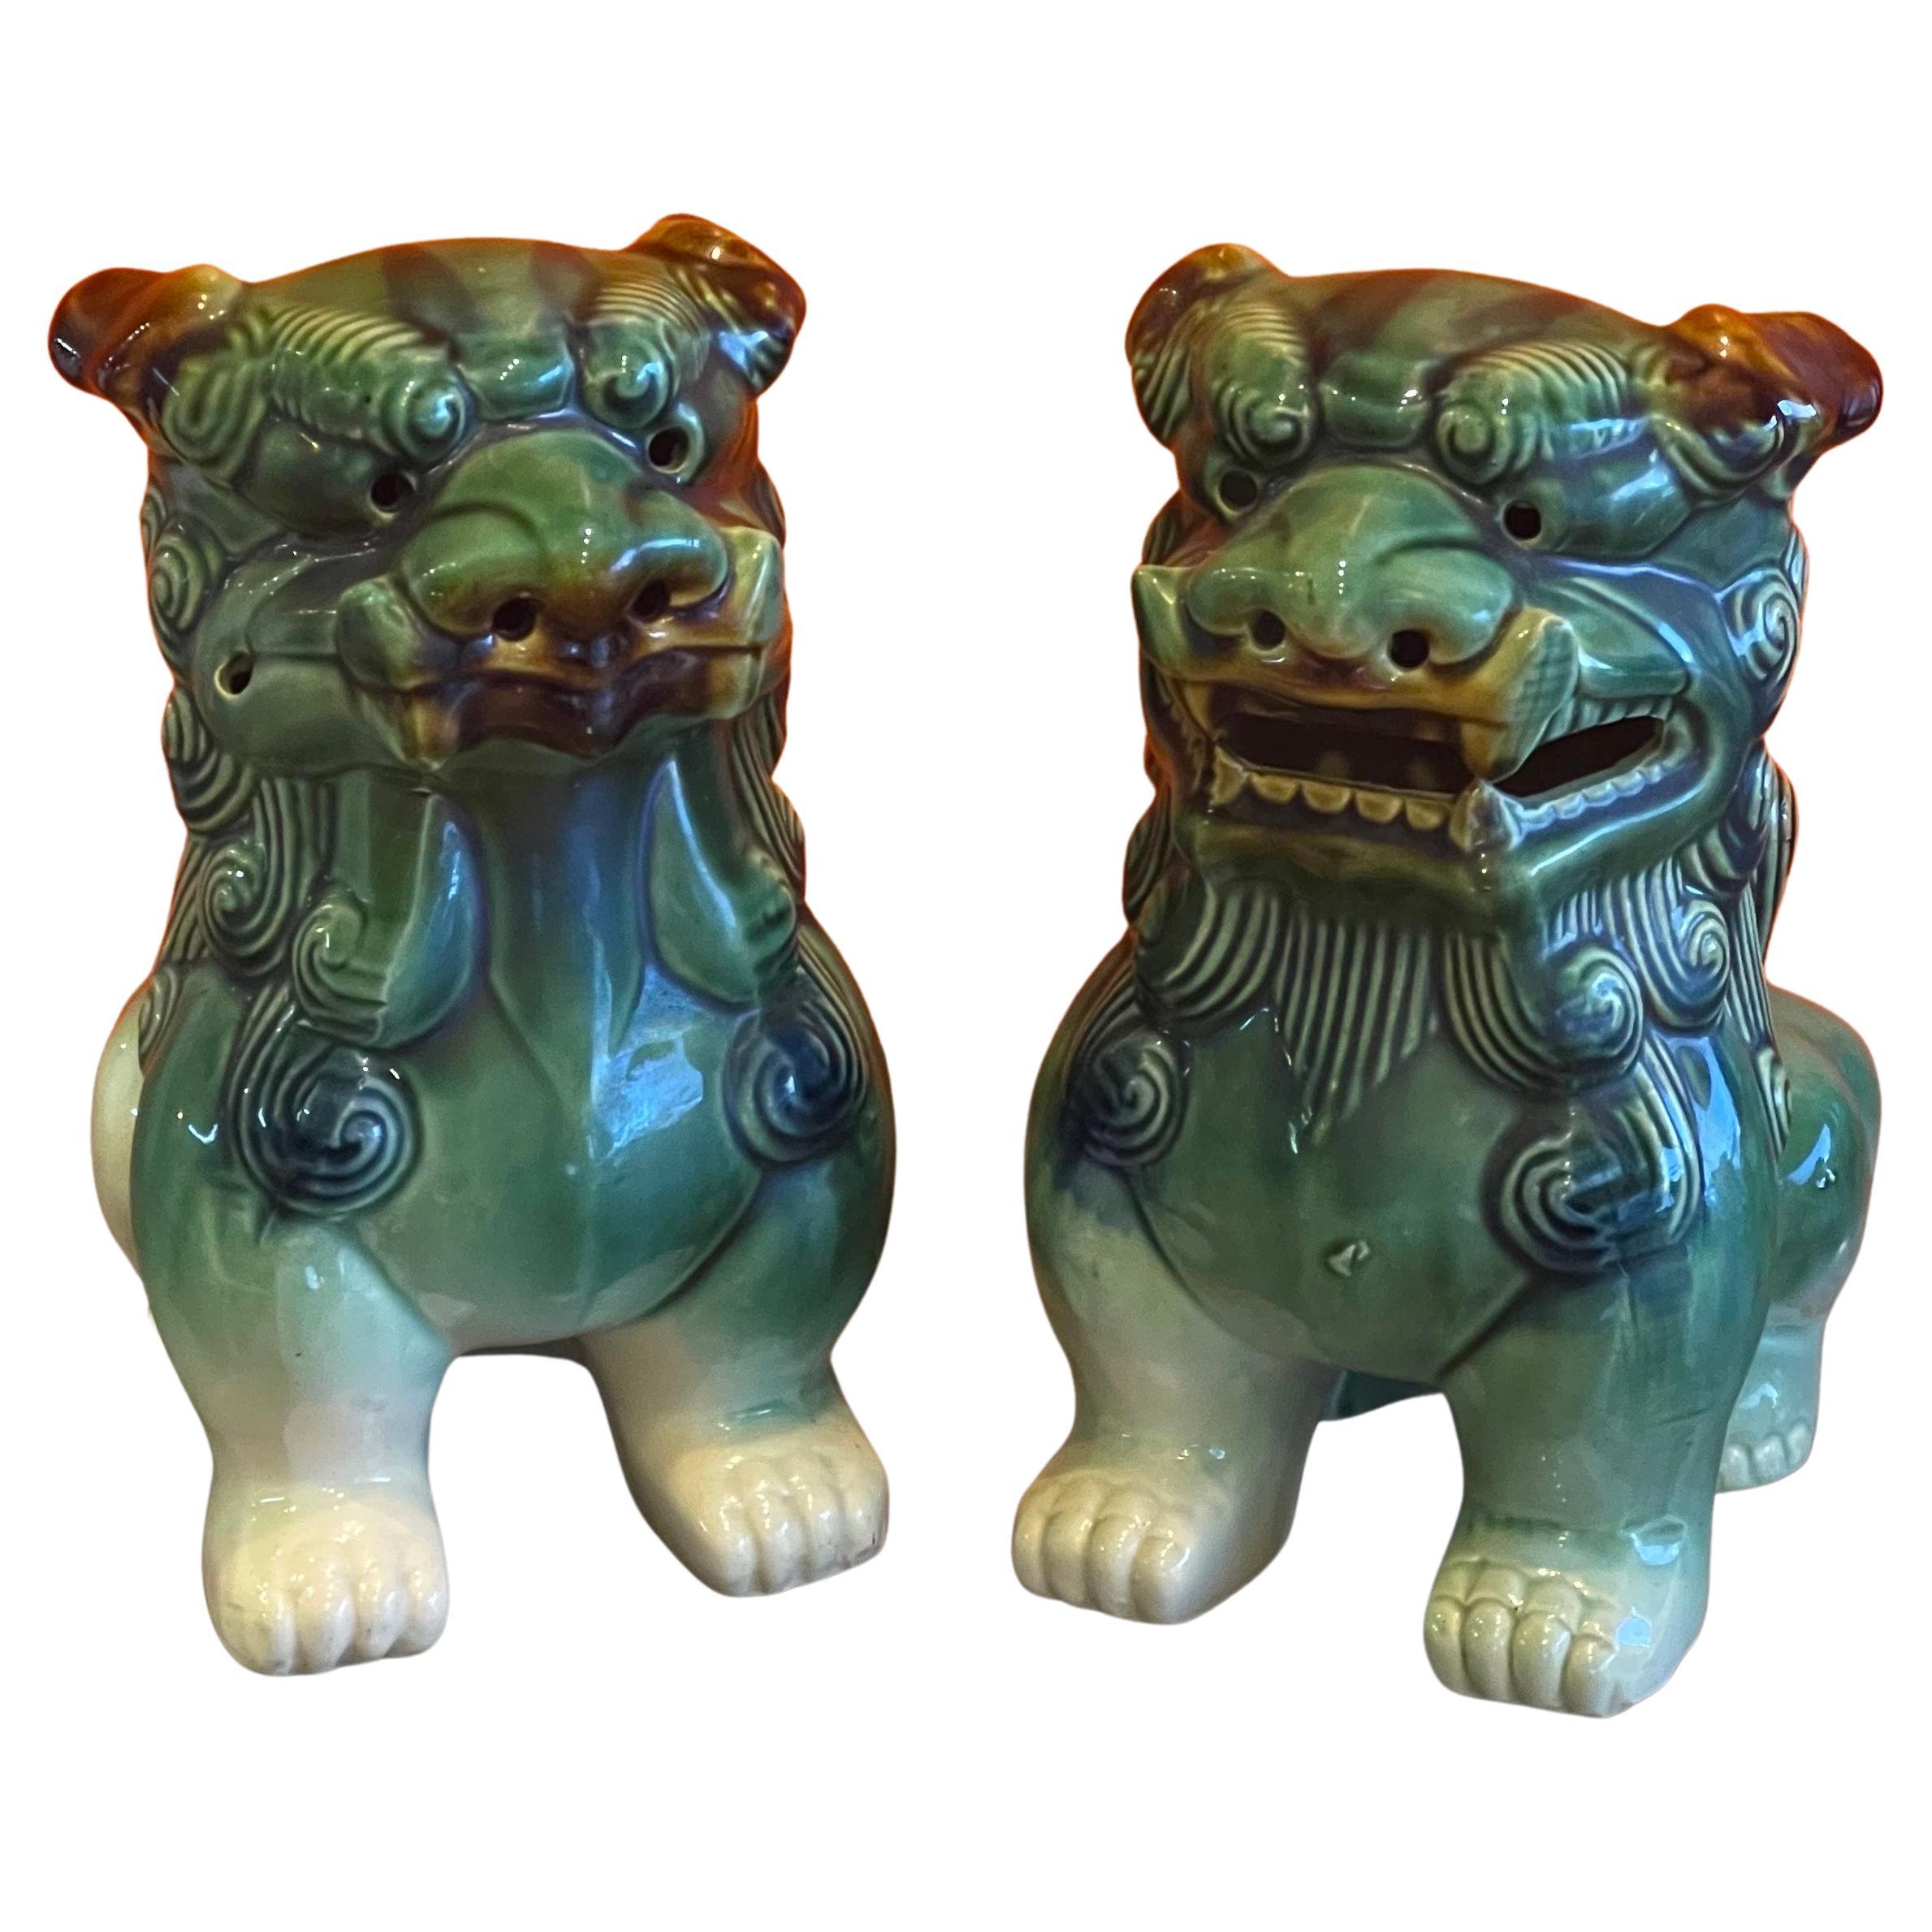 Großartiges Paar polychrom glasierter Keramikhunde aus der Mitte des Jahrhunderts, ca. 1960er Jahre. Tolle Details und eine schöne Farbkombination aus Grün, Braun, Creme und Blau; das Paar misst 12